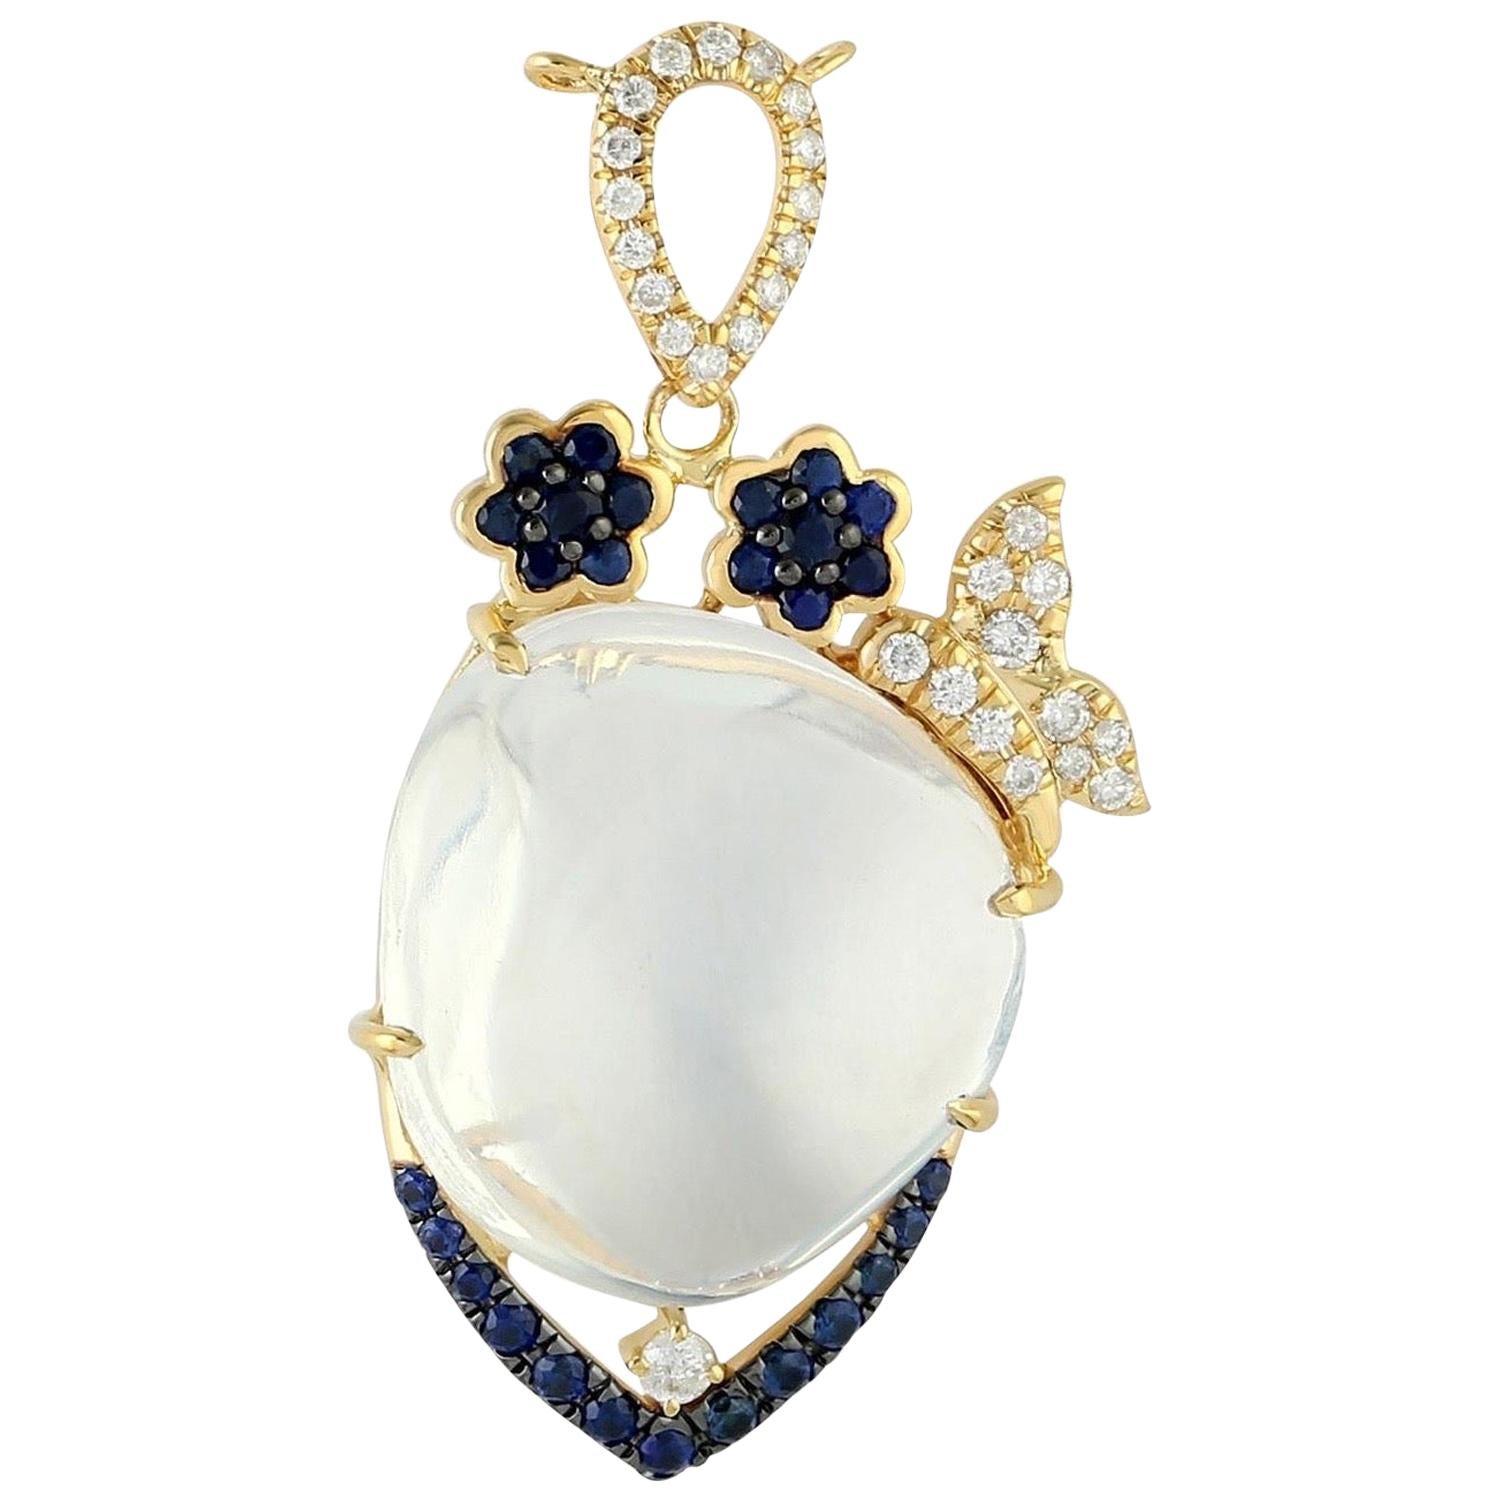 Collier pendentif en or 18 carats avec opale, saphir bleu et diamants